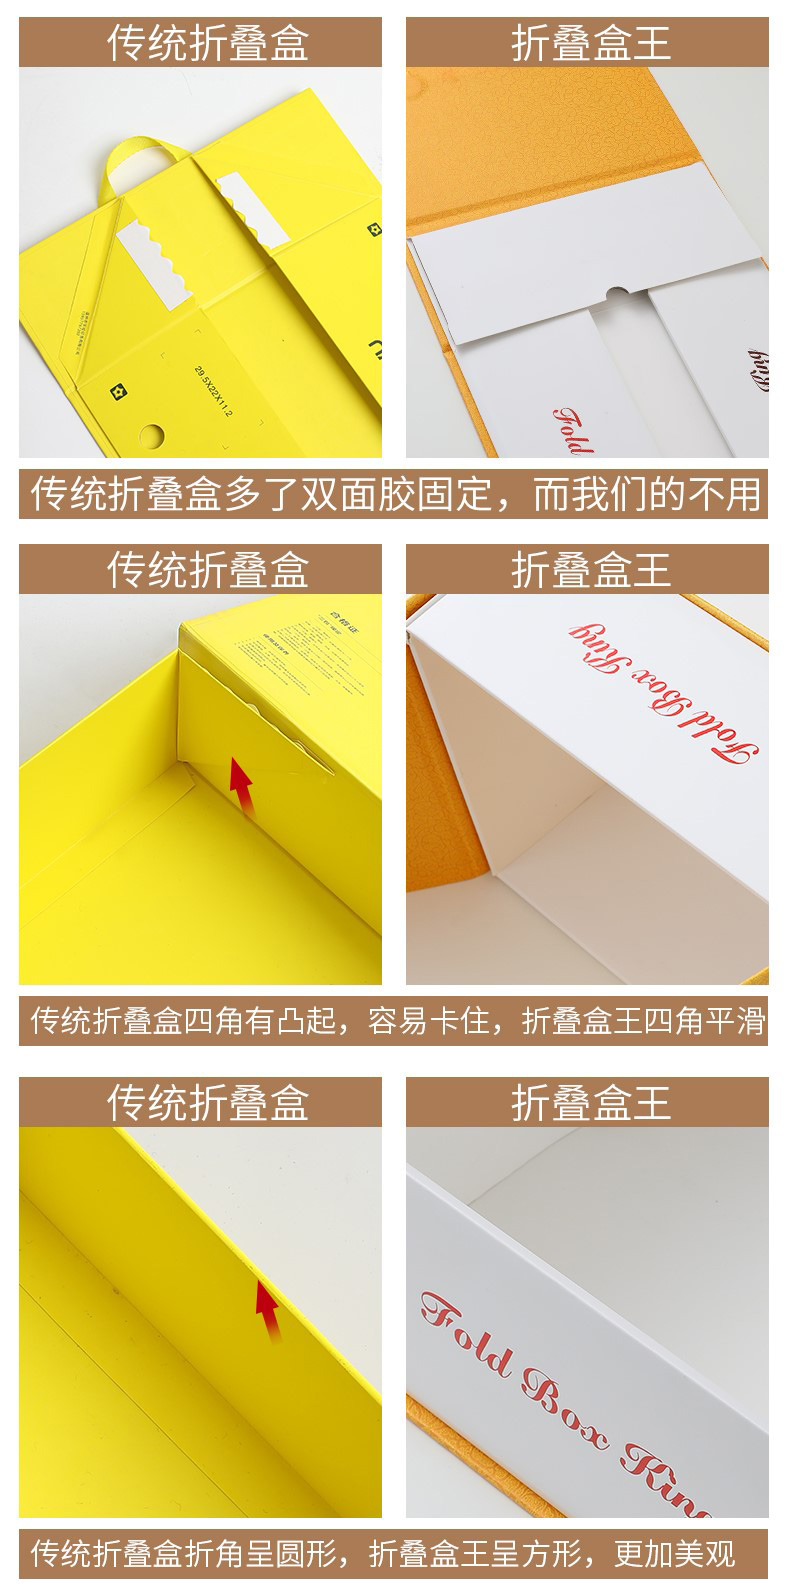 浙江华睿包装有限公司将亮相CIPPME上海国际包装展